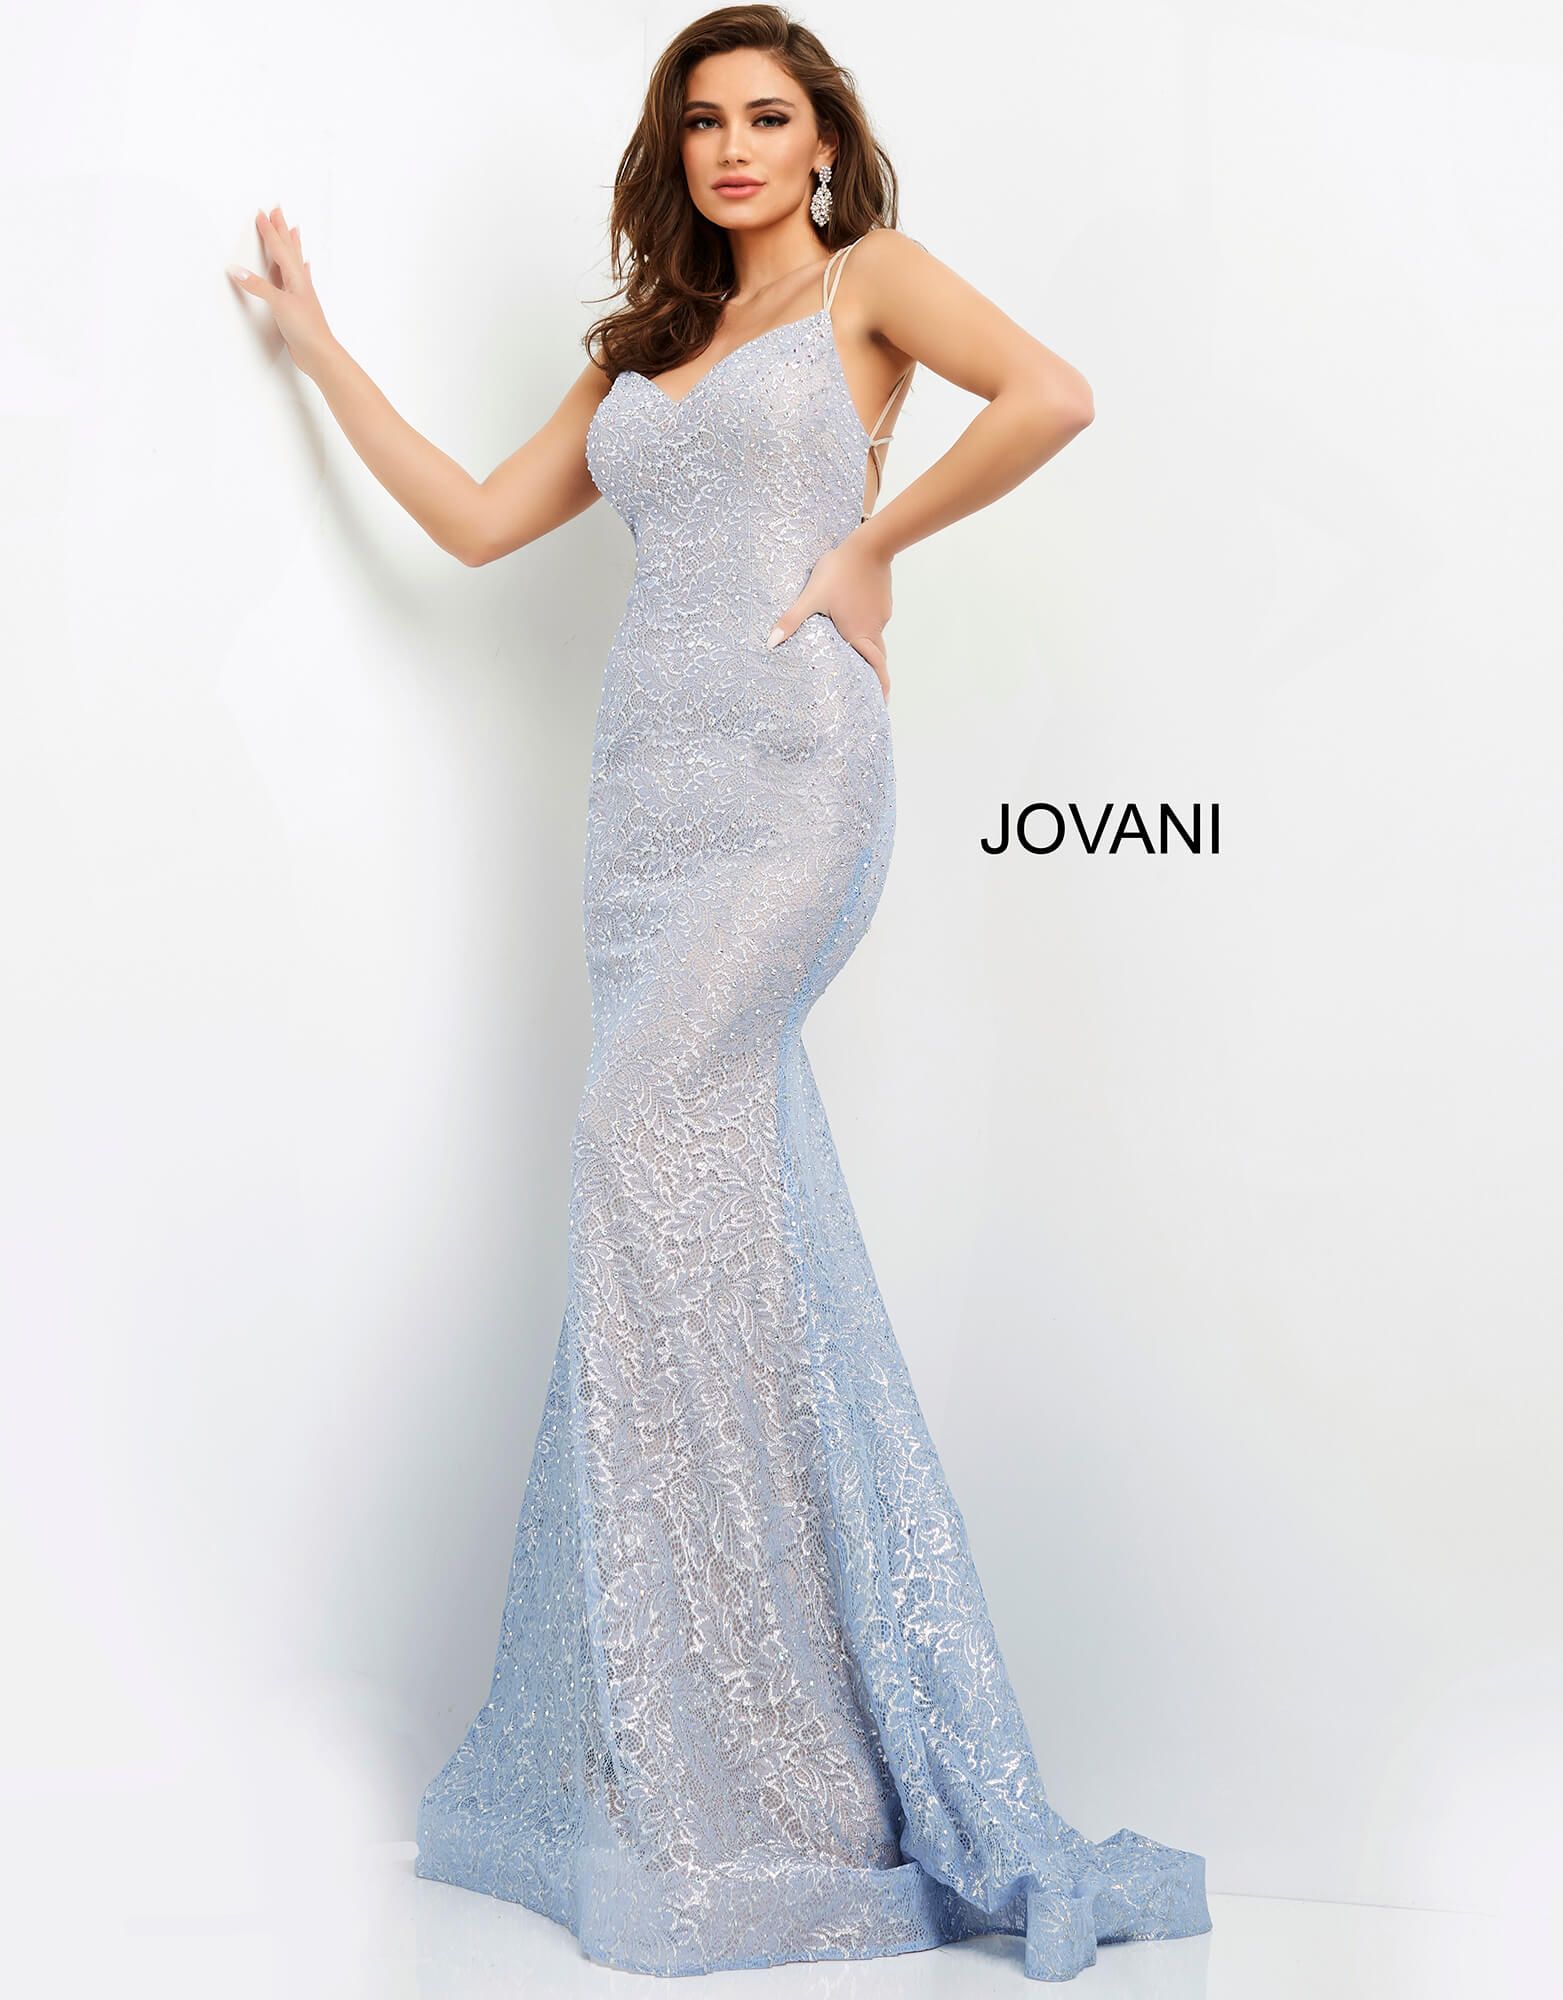 Jovani 05942 Dress - MadameBridal.com